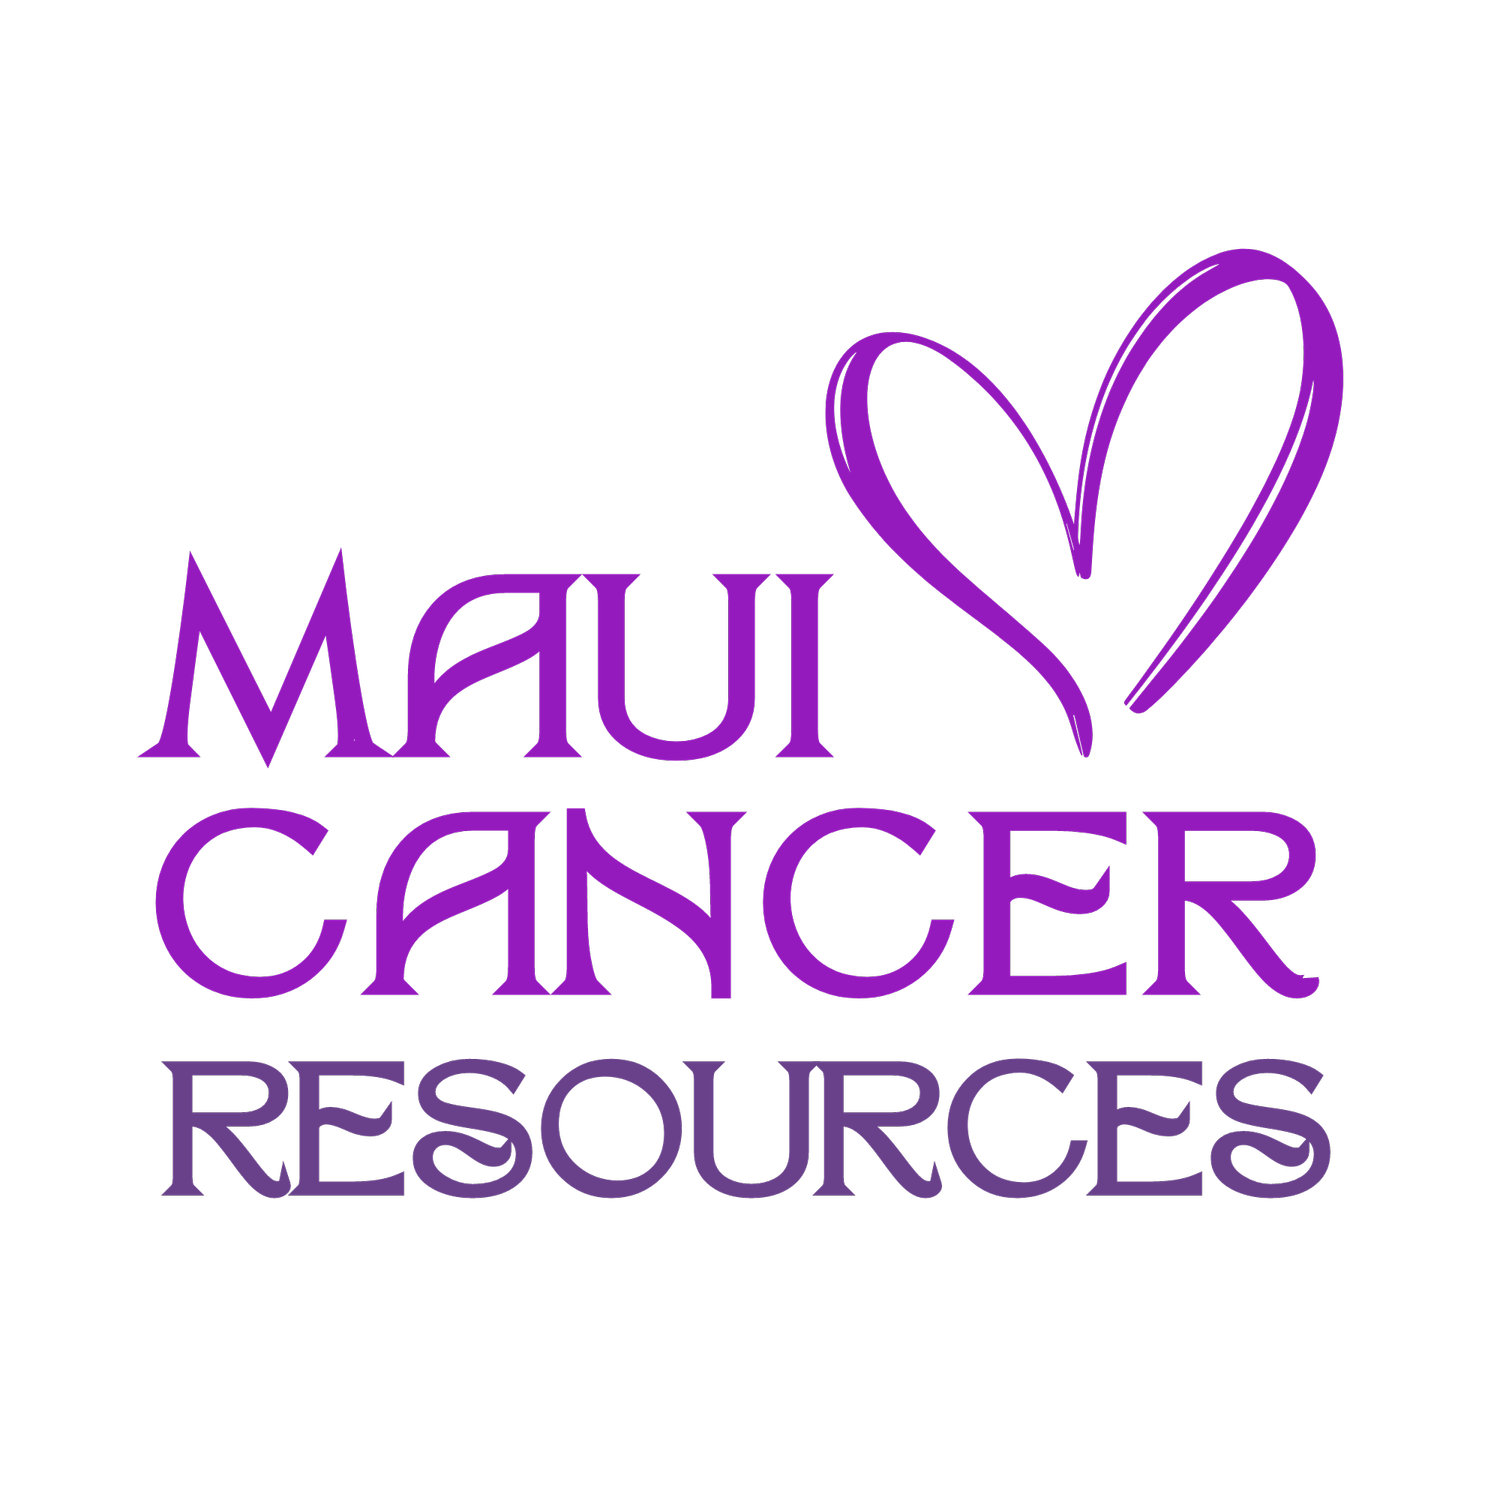 Maui Cancer Resources